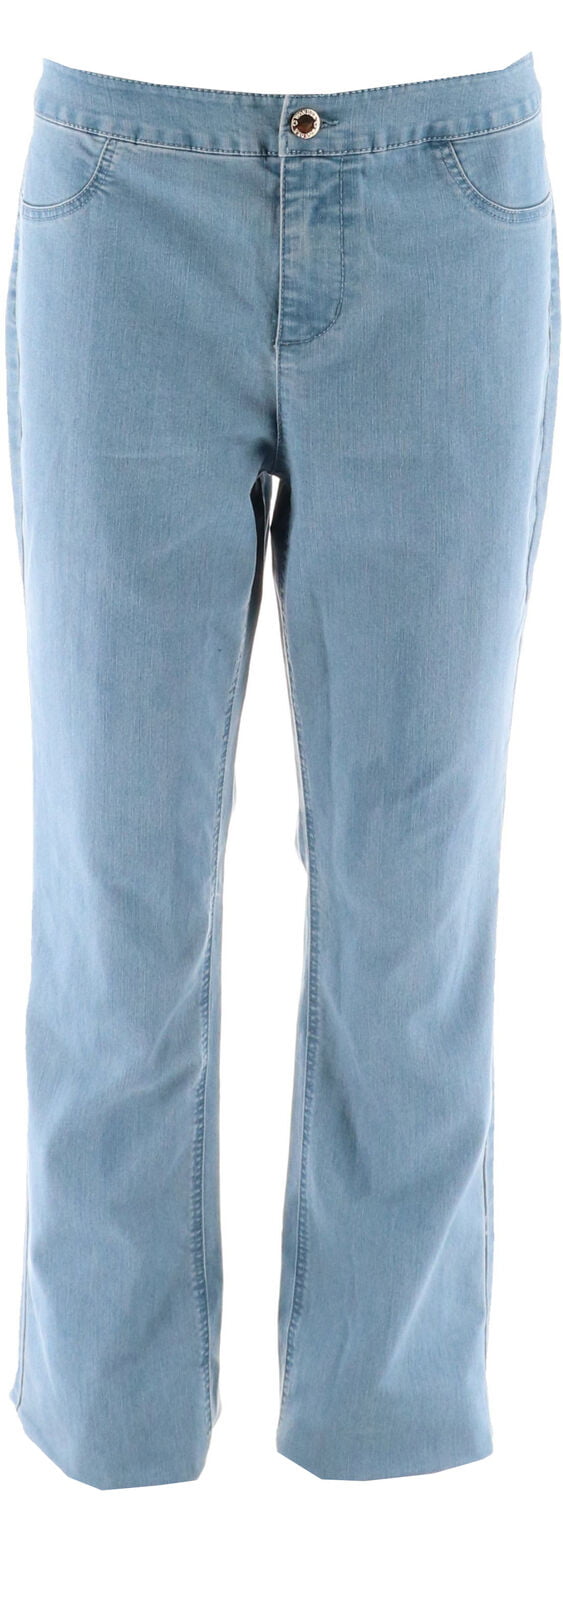 Jeans Kithy ABOUT YOU Donna Abbigliamento Pantaloni e jeans Jeans Jeans boyfriend 